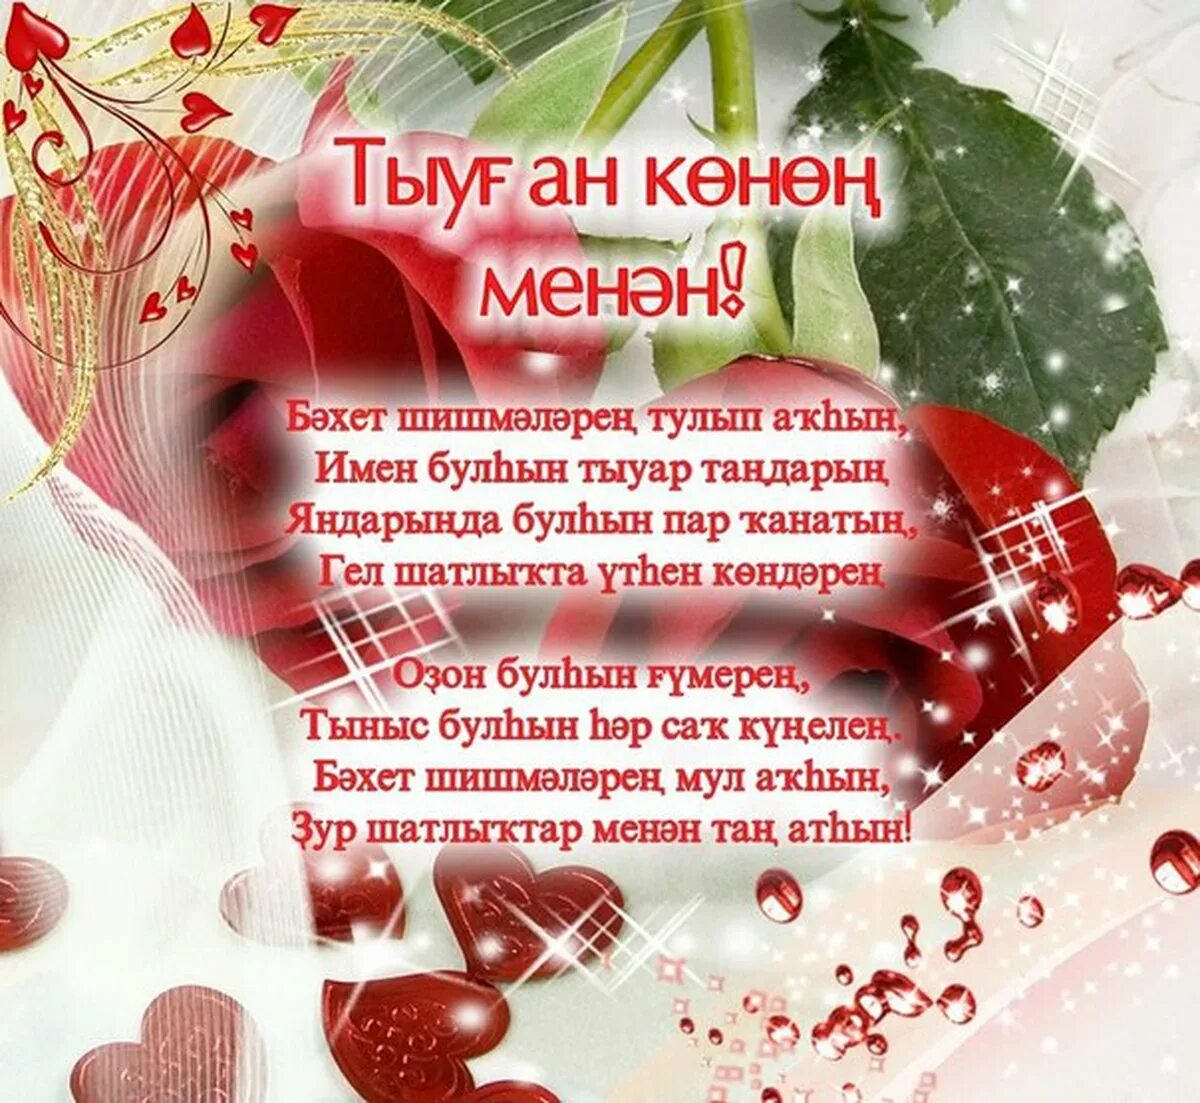 С днем рождения на башкирском языке песня